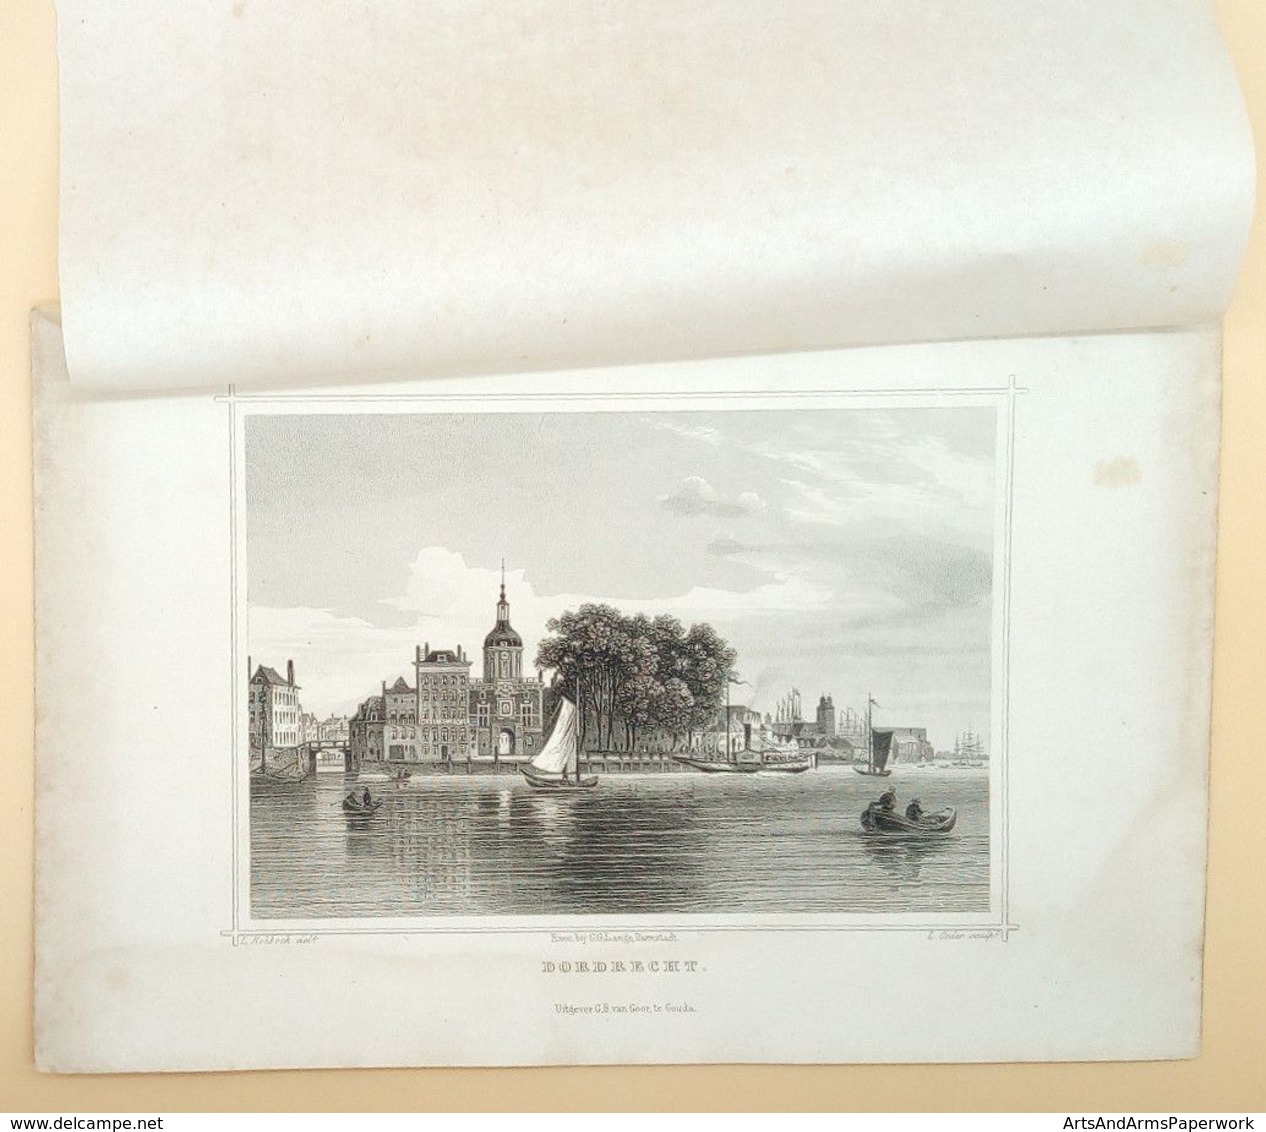 Dordrecht 1858/ Dordrecht (NL) 1858, Rohbock, Oeder - Art